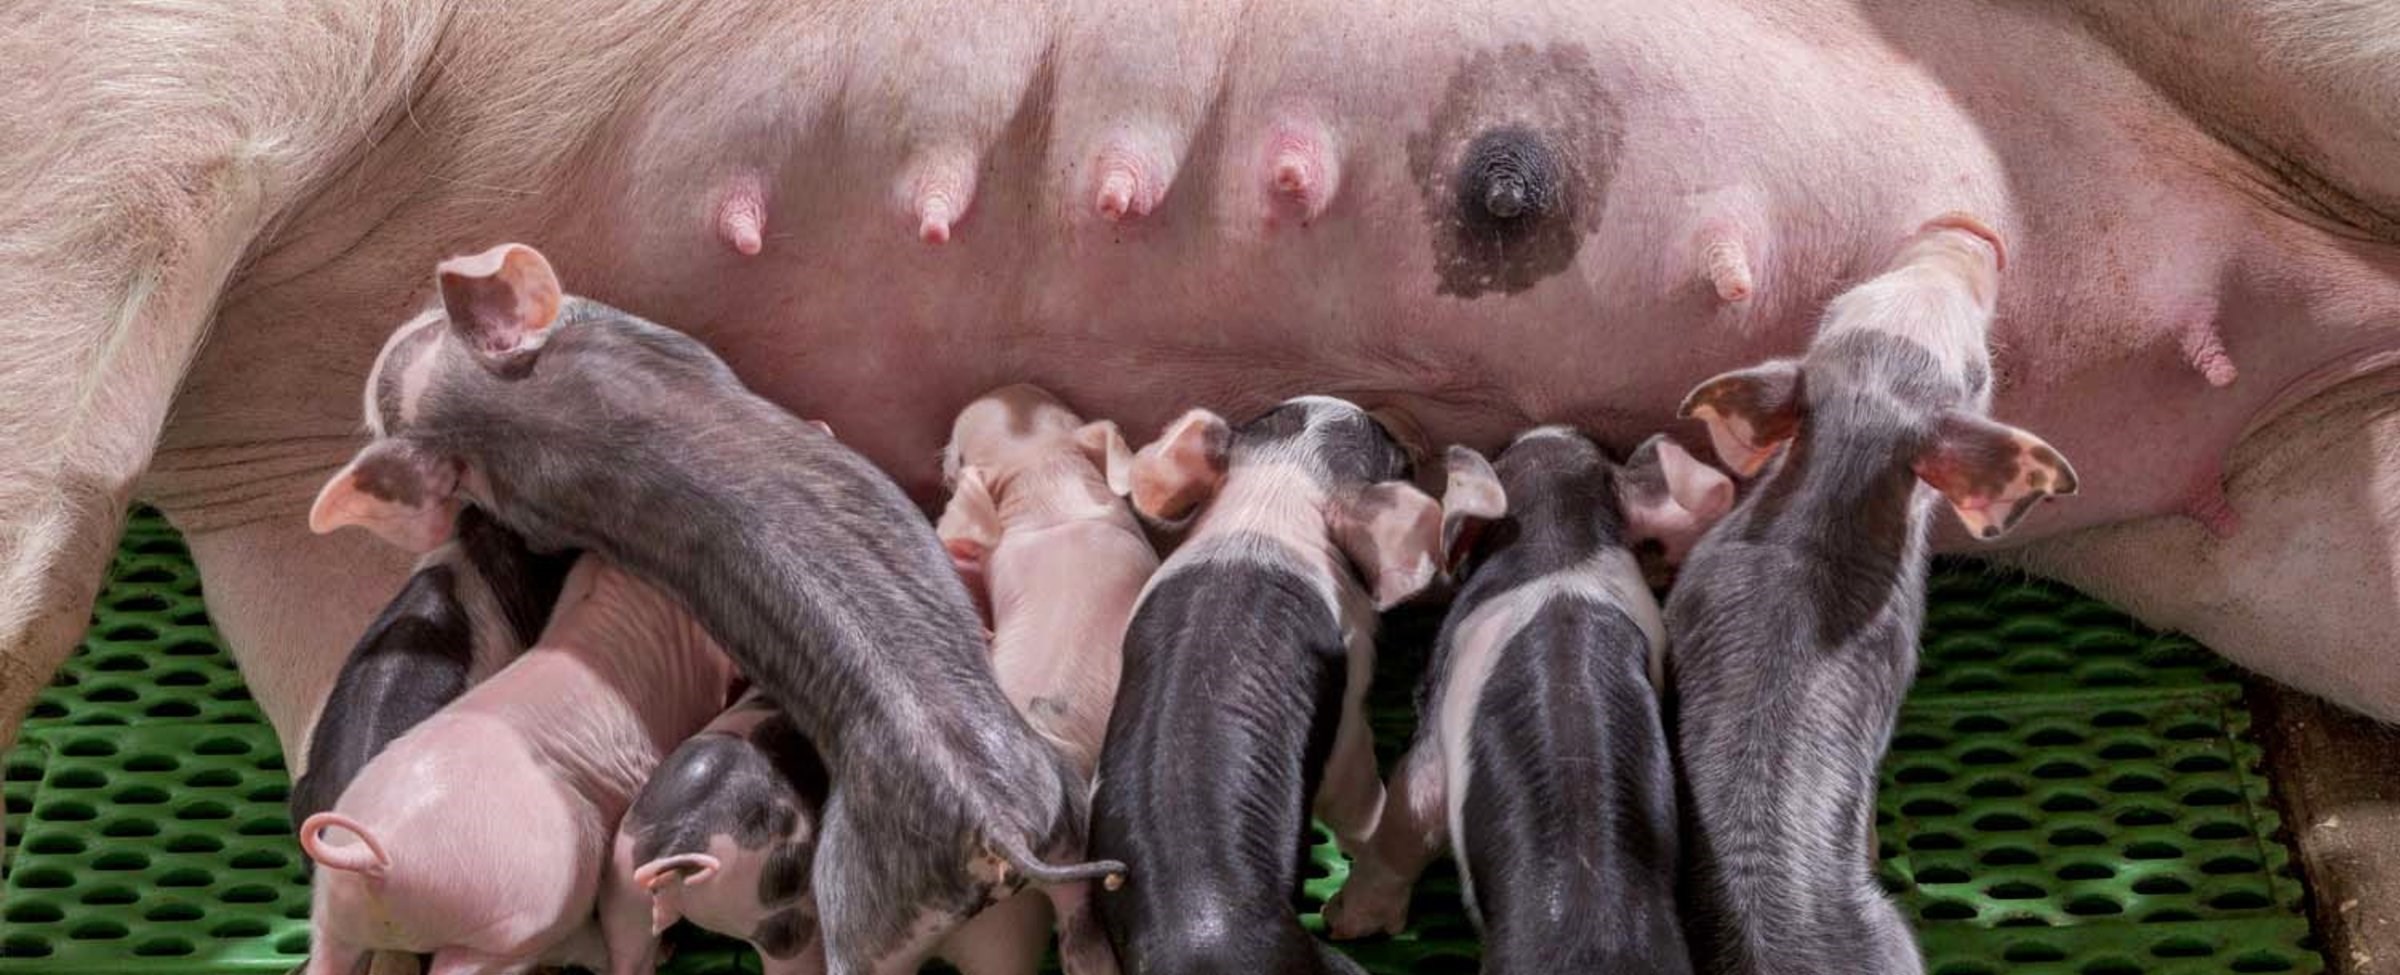 Preventing disease in sows